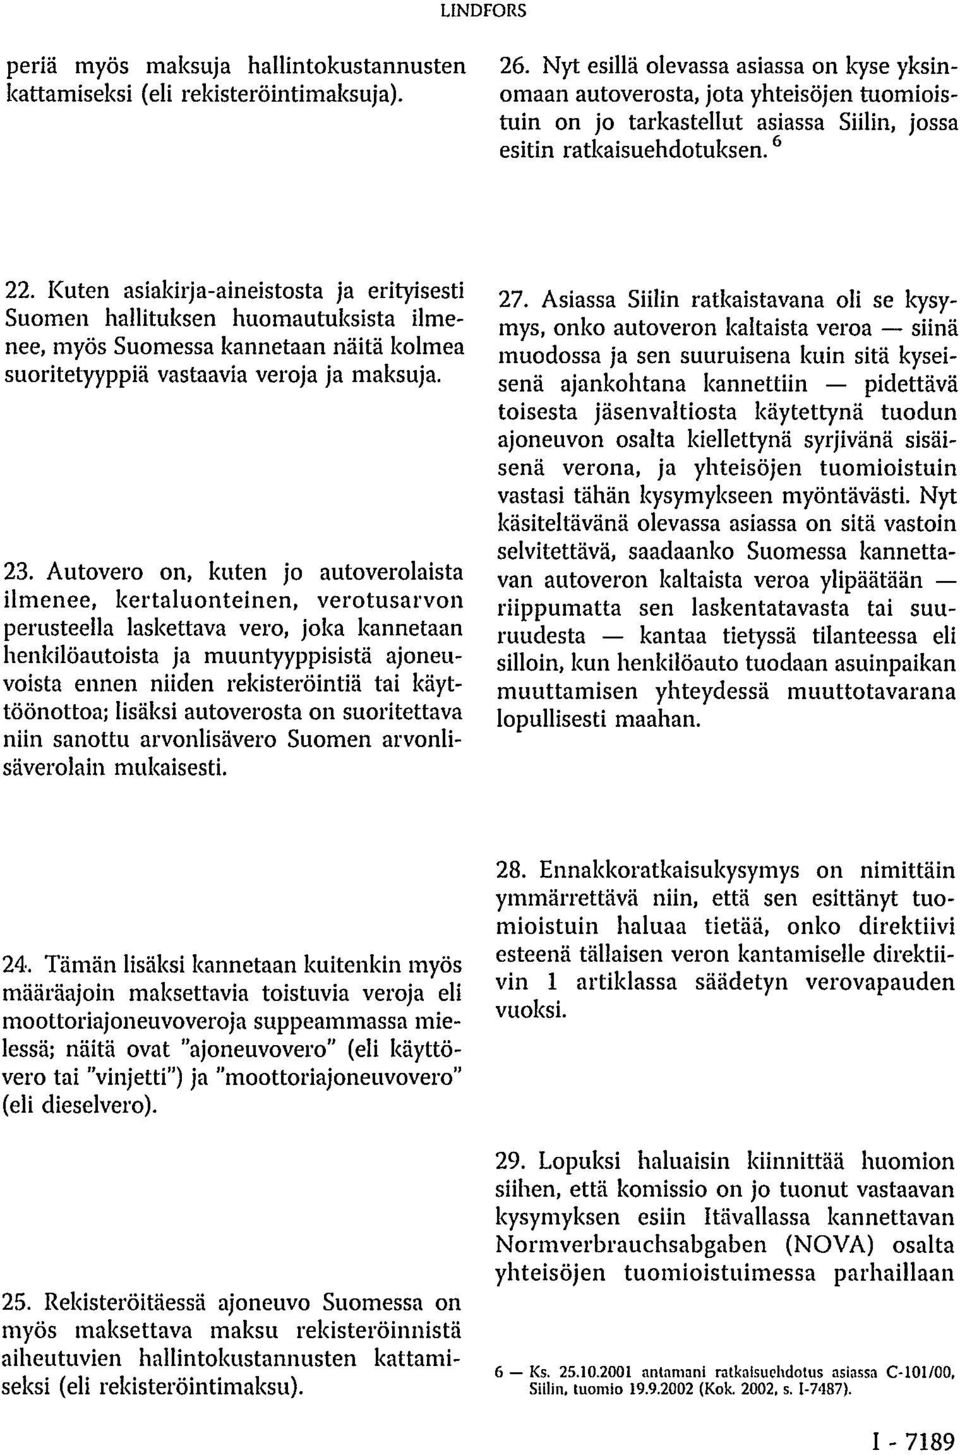 Kuten asiakirja-aineistosta ja erityisesti Suomen hallituksen huomautuksista ilmenee, myös Suomessa kannetaan näitä kolmea suoritetyyppiä vastaavia veroja ja maksuja. 23.